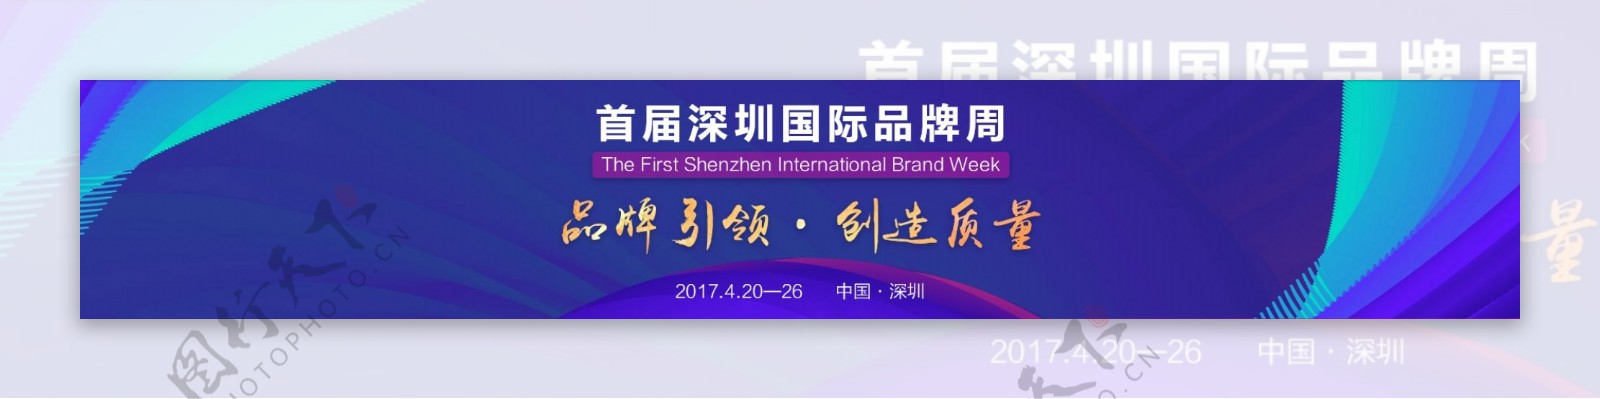 深圳国际品牌周banner